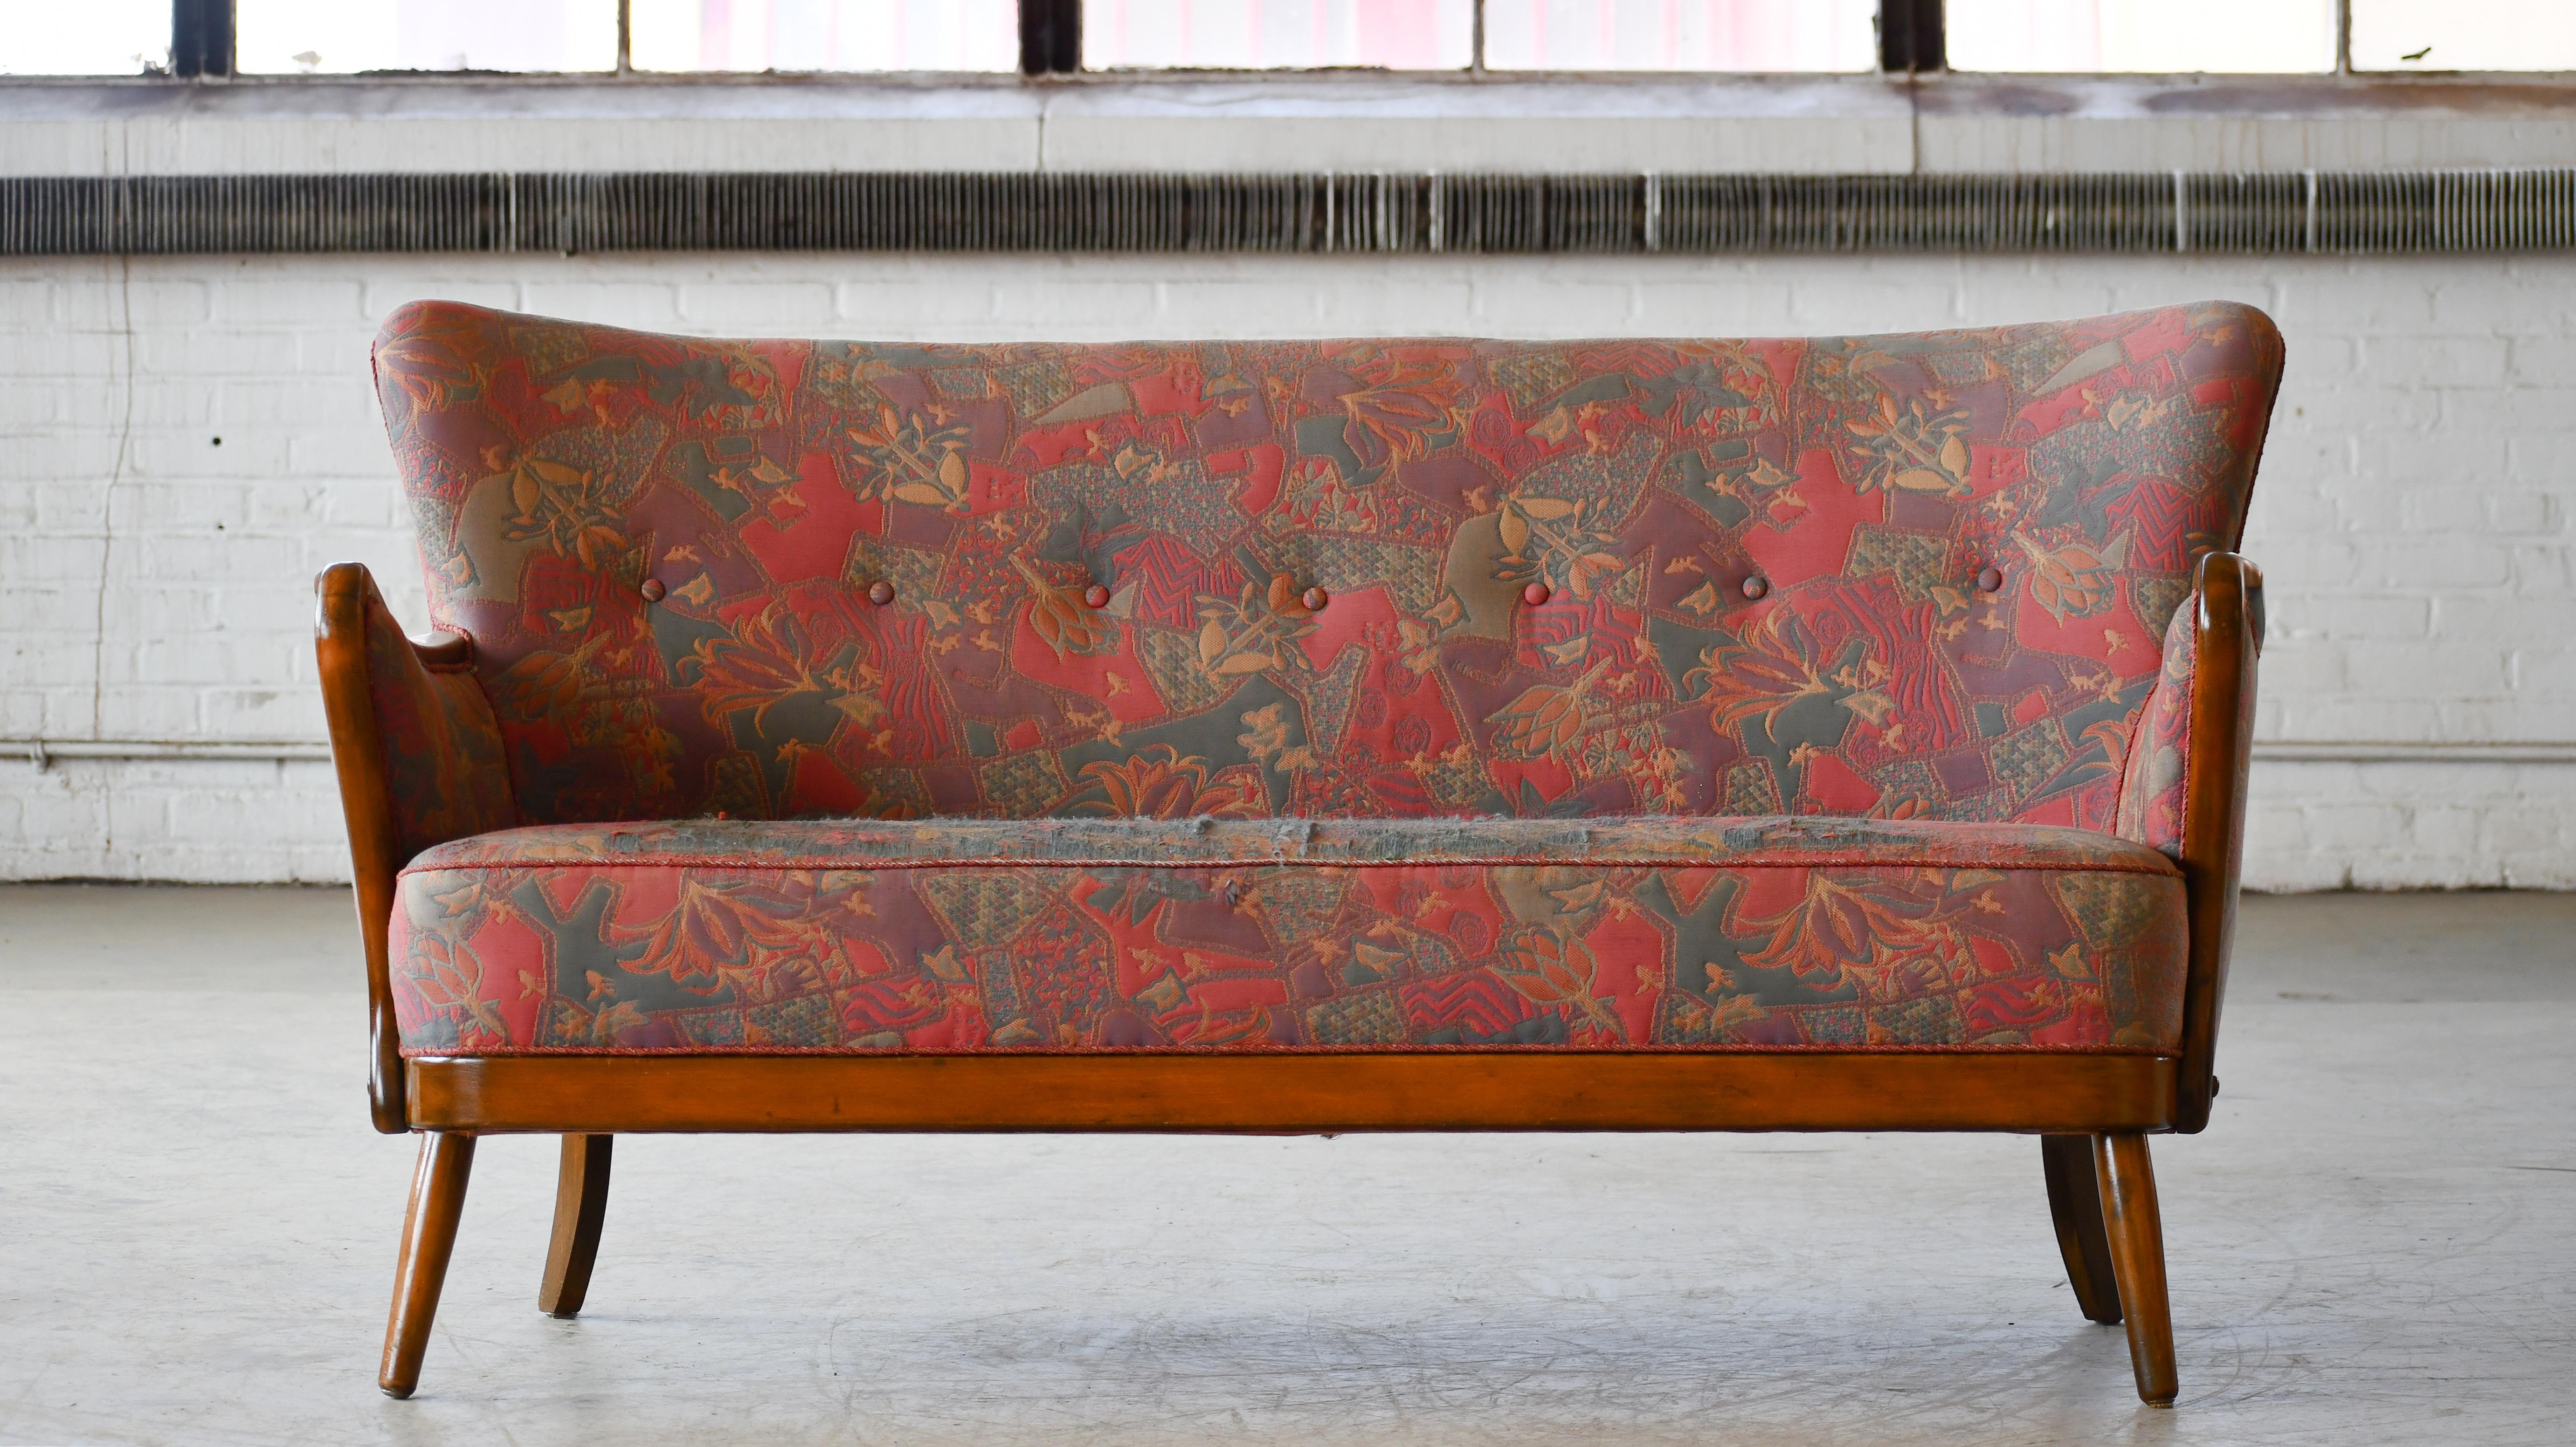 Fantastisches, von Alfred Christensen entworfenes Sofa aus den 1940er Jahren in seinem charakteristischen Stil  hergestellt von Slagelse Mobelvaerk in den 1940er Jahren.  Schöne raffinierte Linien mit geschwungenen Armen, Spiralfedern im Sitz und